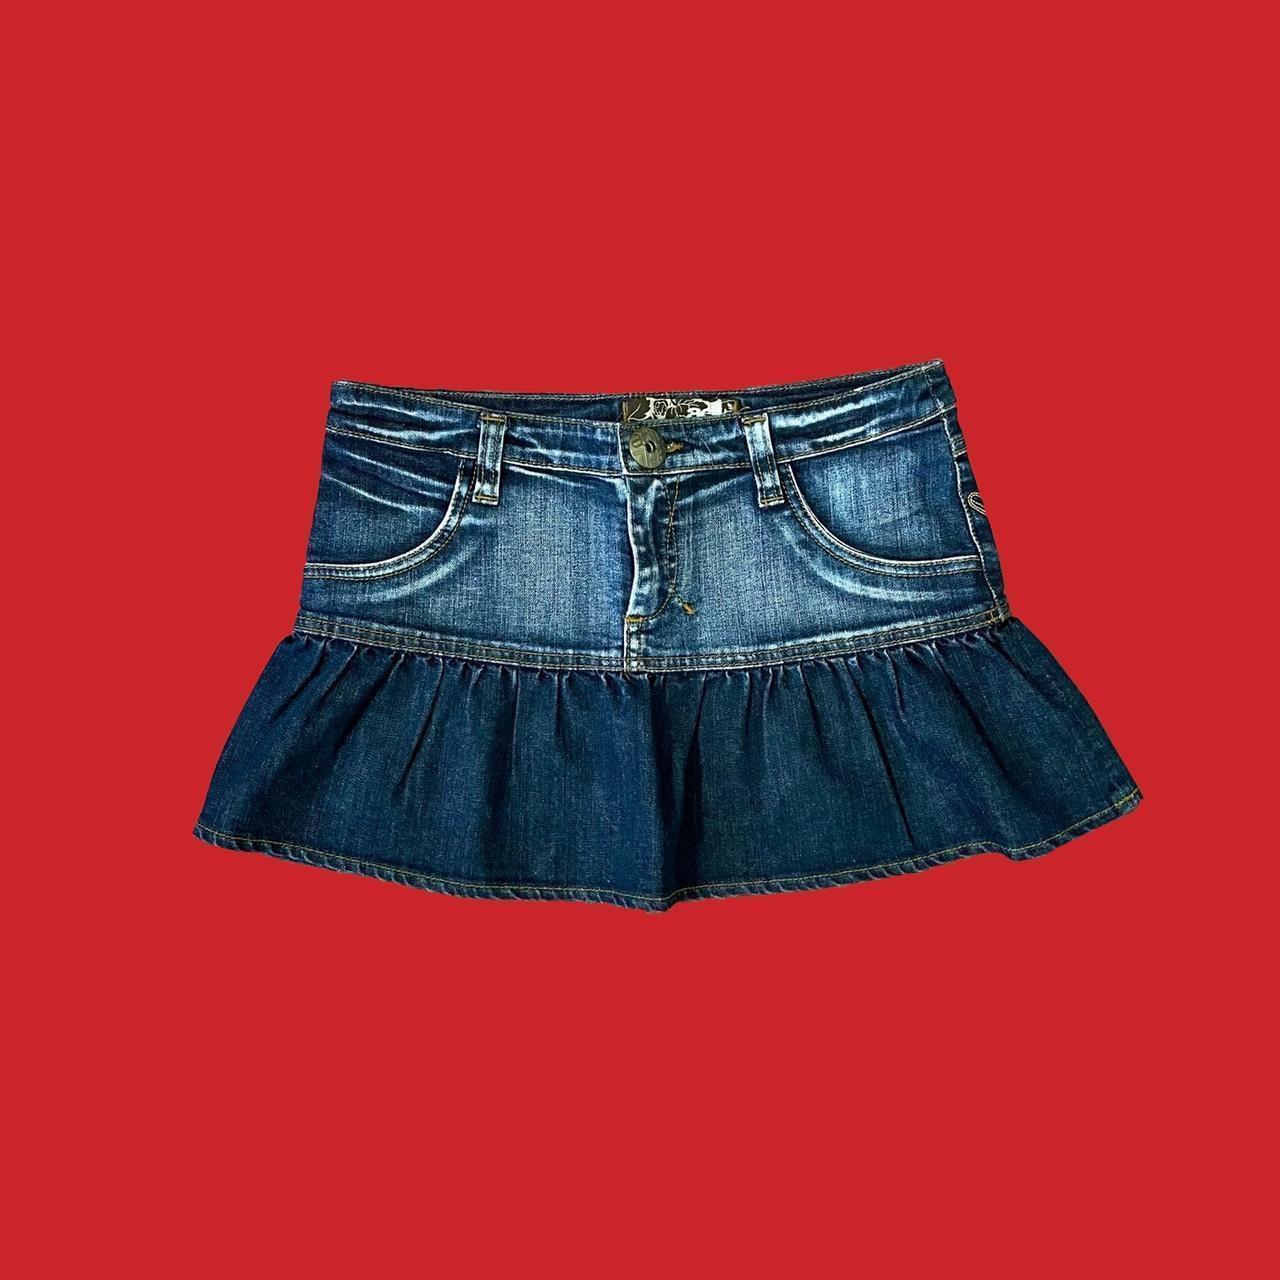 Unbranded Women's Blue Skirt | Depop